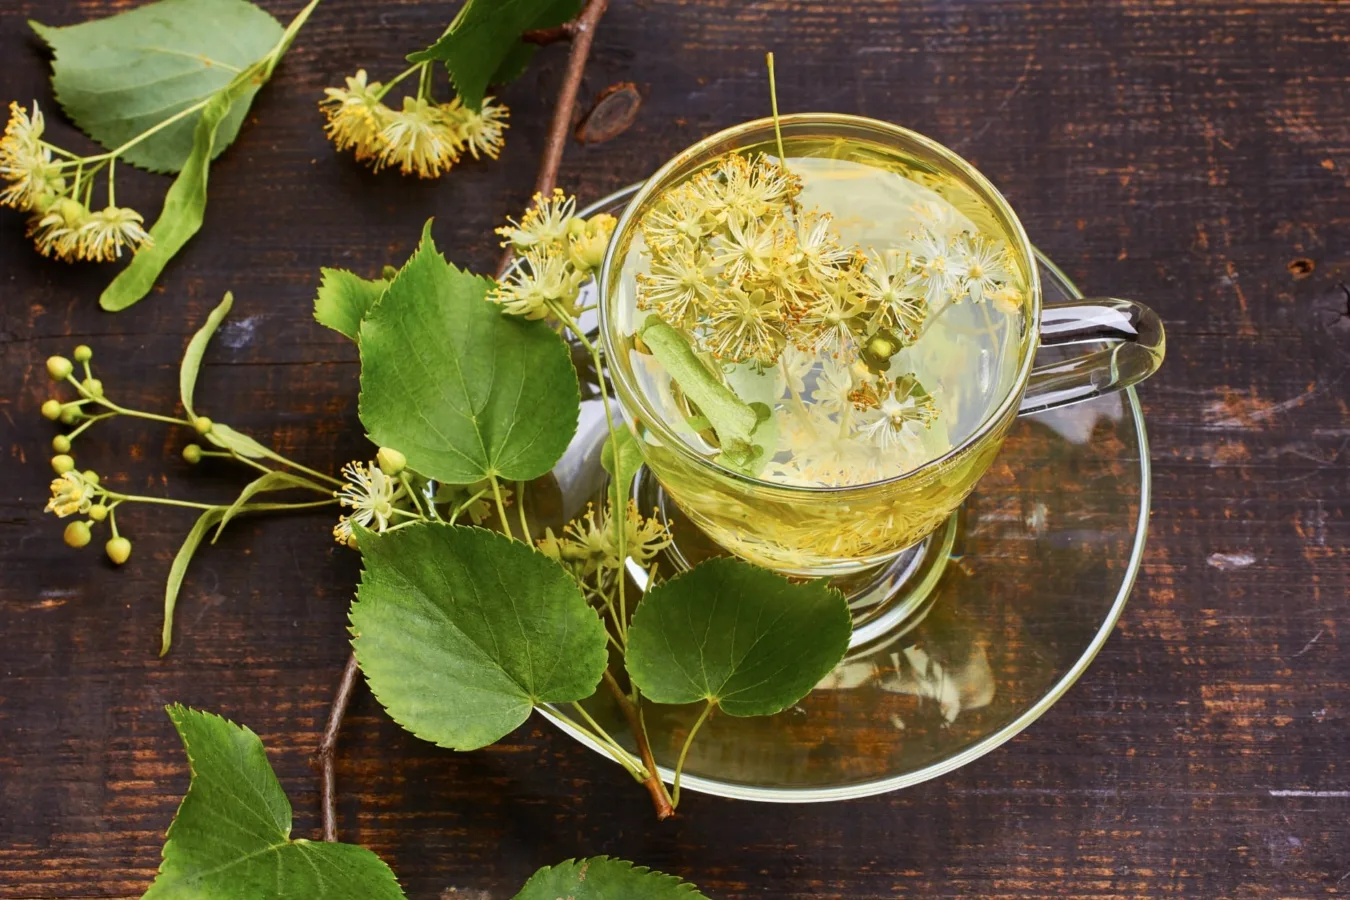 Herbata z kwiatów lipy w szklanej filiżance na drewnianym tle, otoczona świeżymi zielonymi liśćmi i kwiatami.